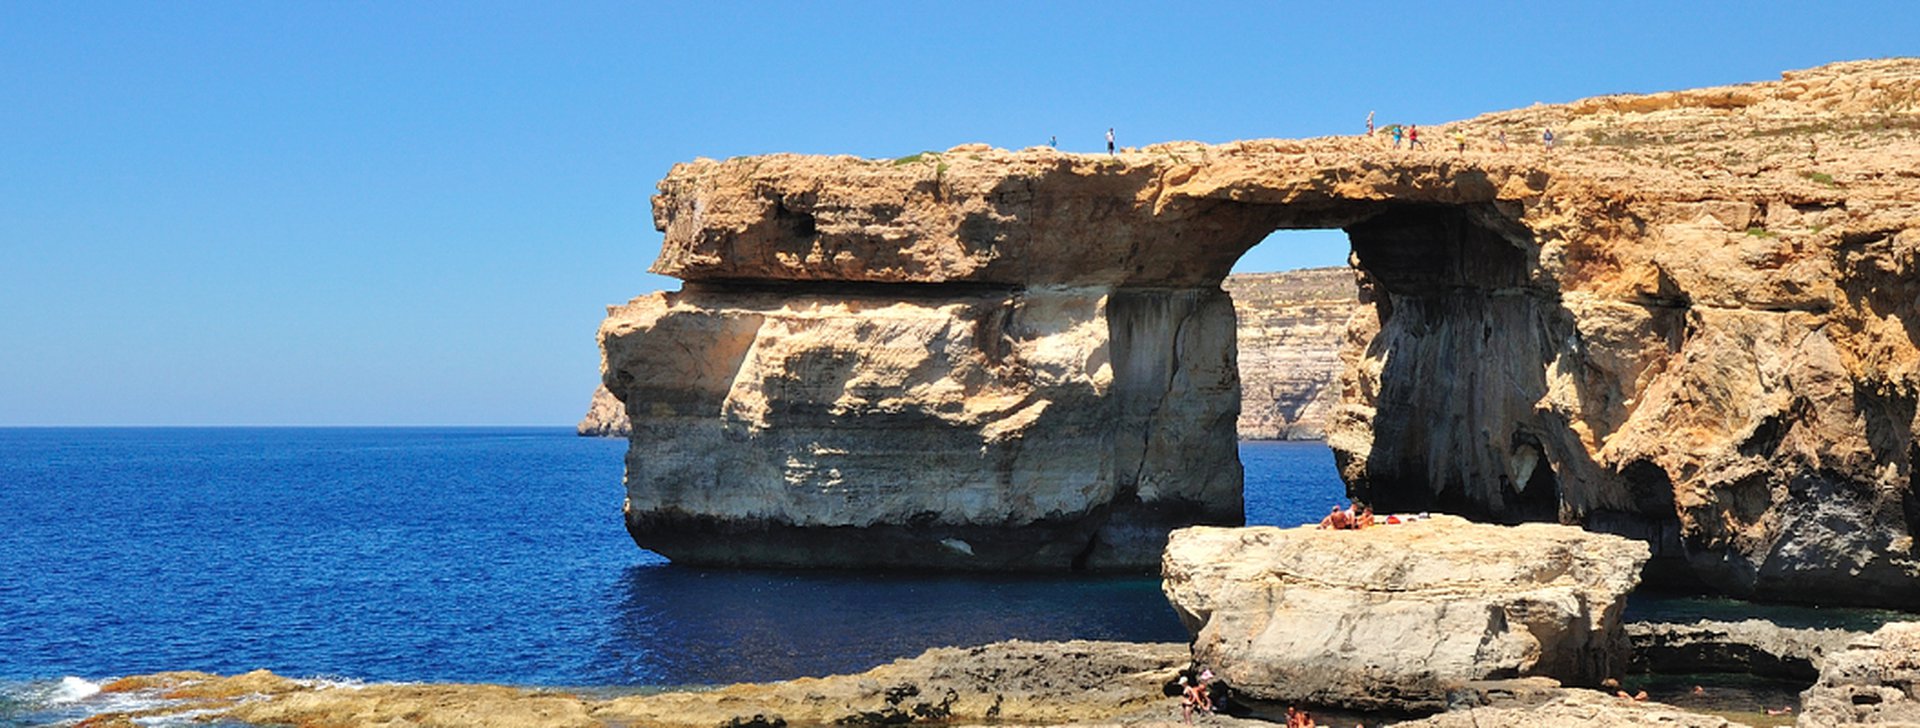 Reiseziele Malta